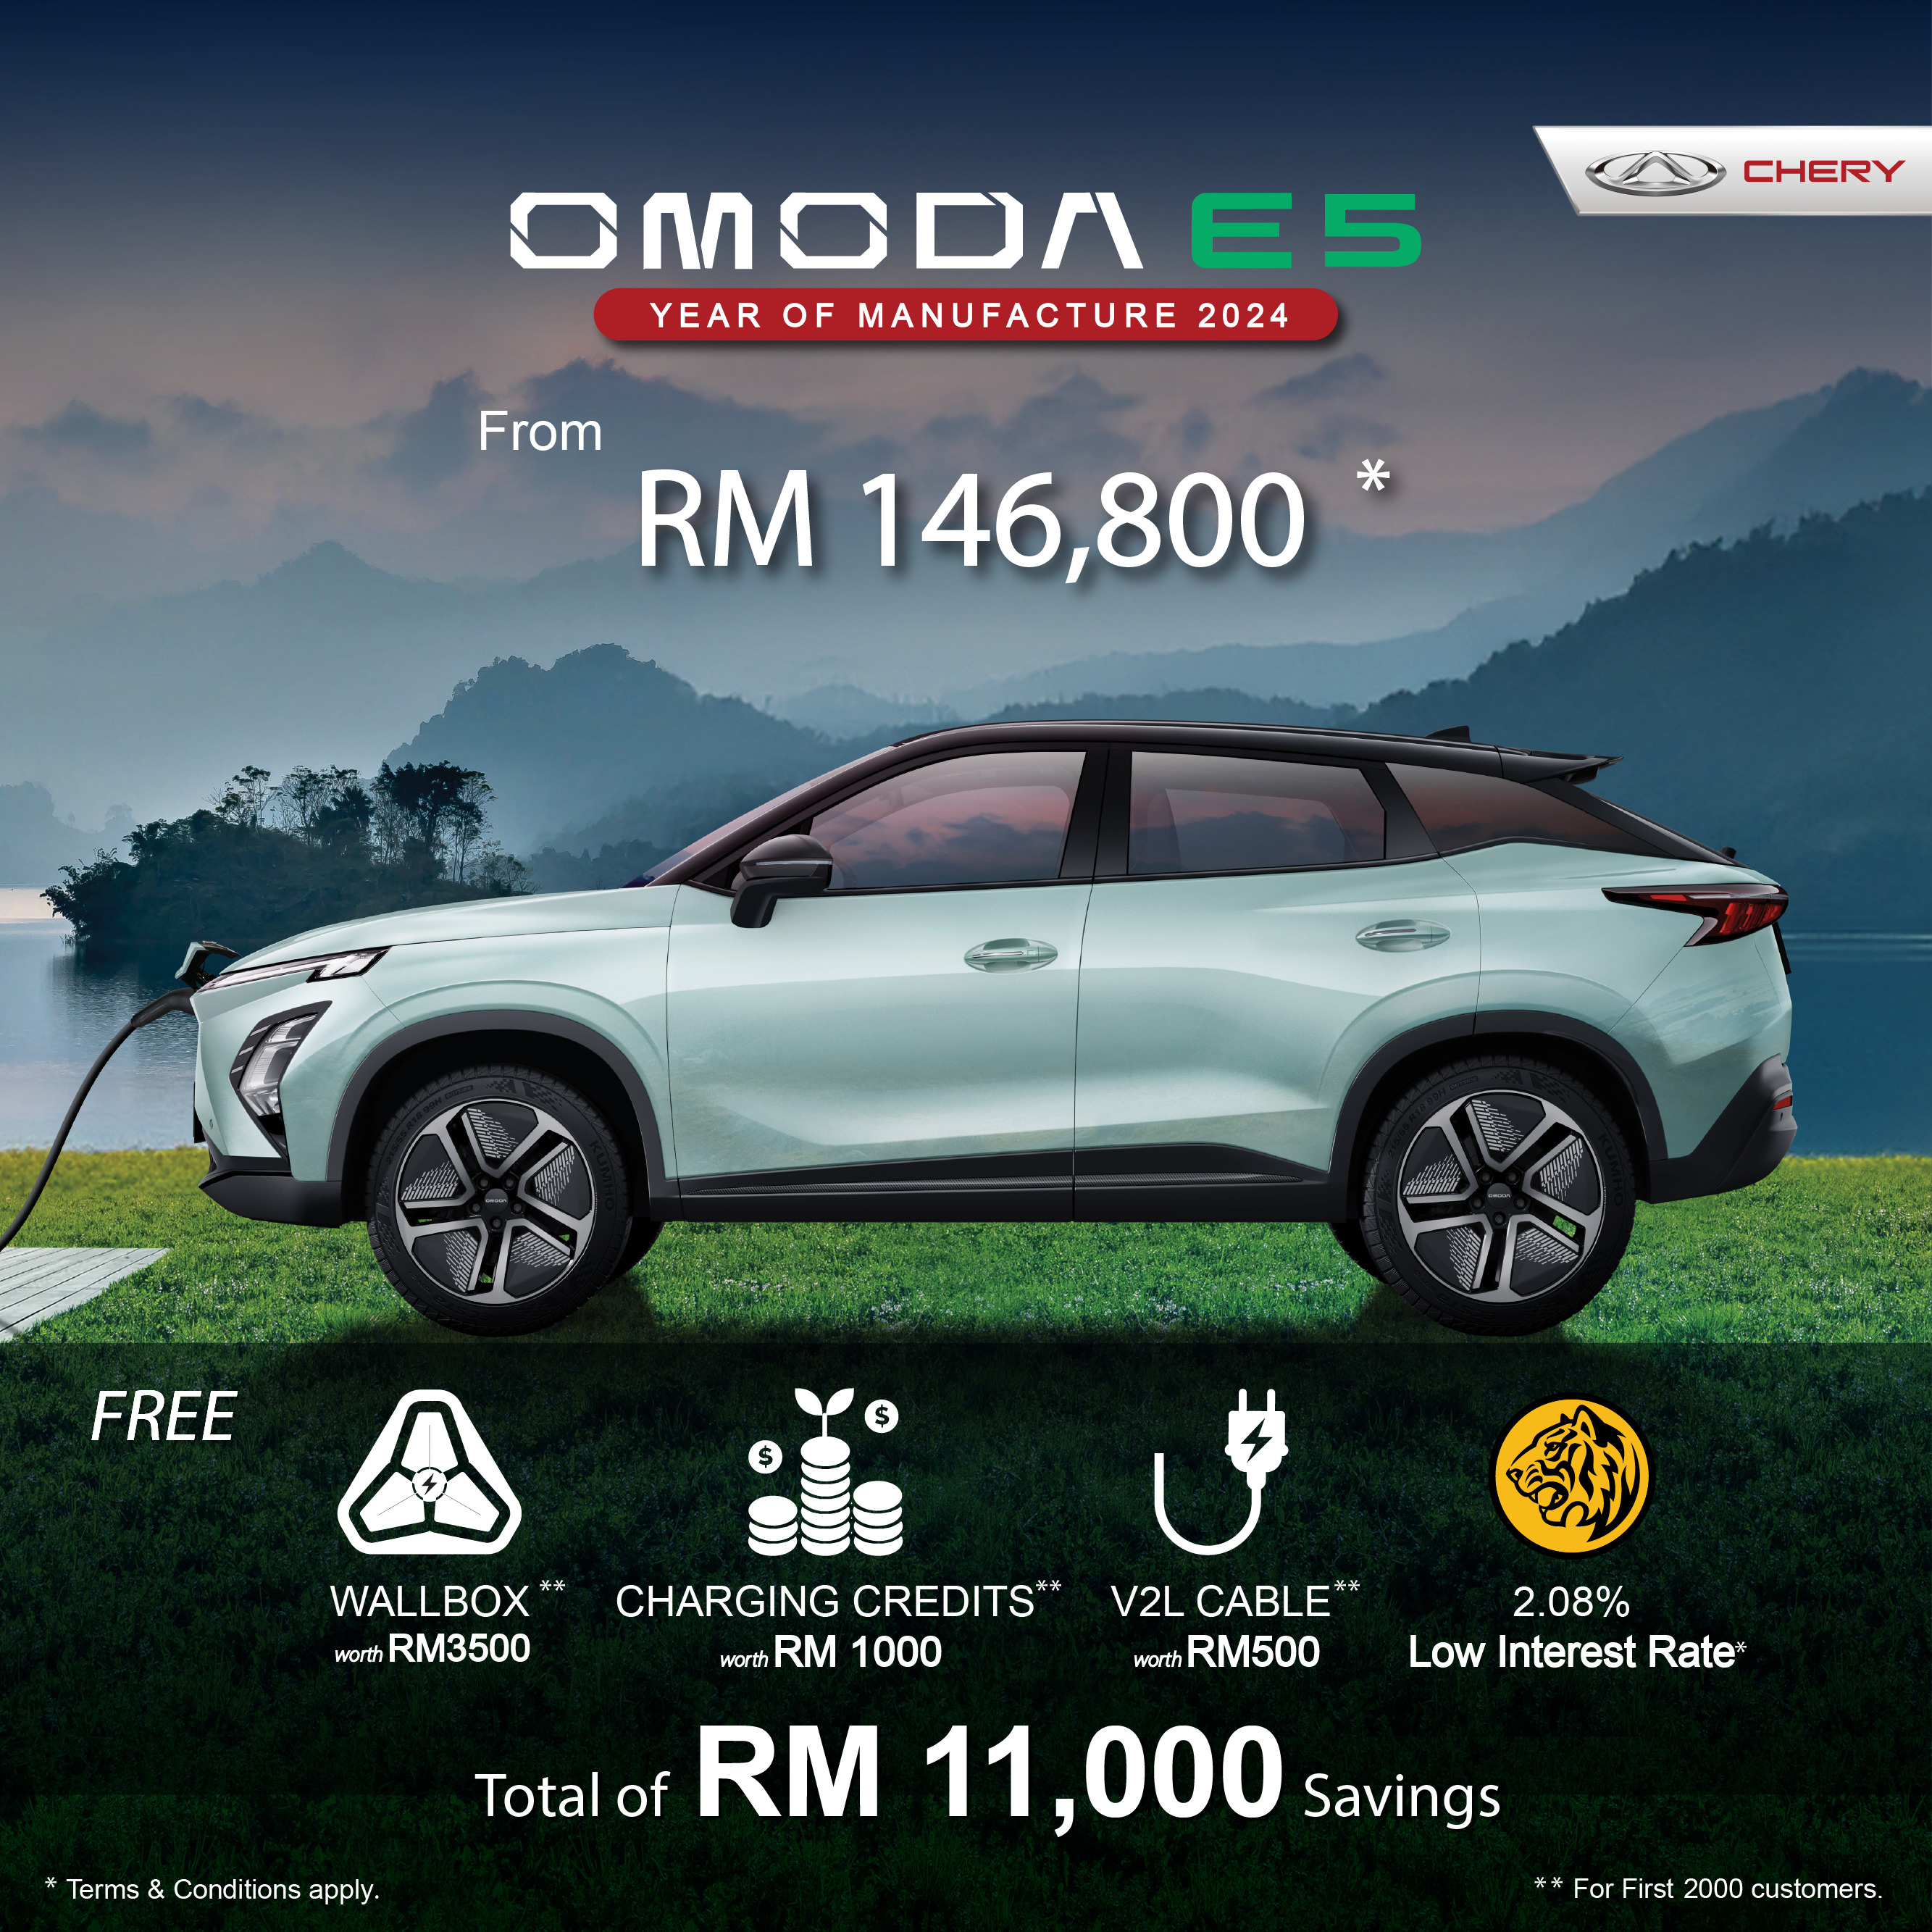 首2,000位“早鸟”订购 Chery Omoda E5 可节省RM11k！包括免费挂壁式充电器、充电用额、低至2.08%车贷利率